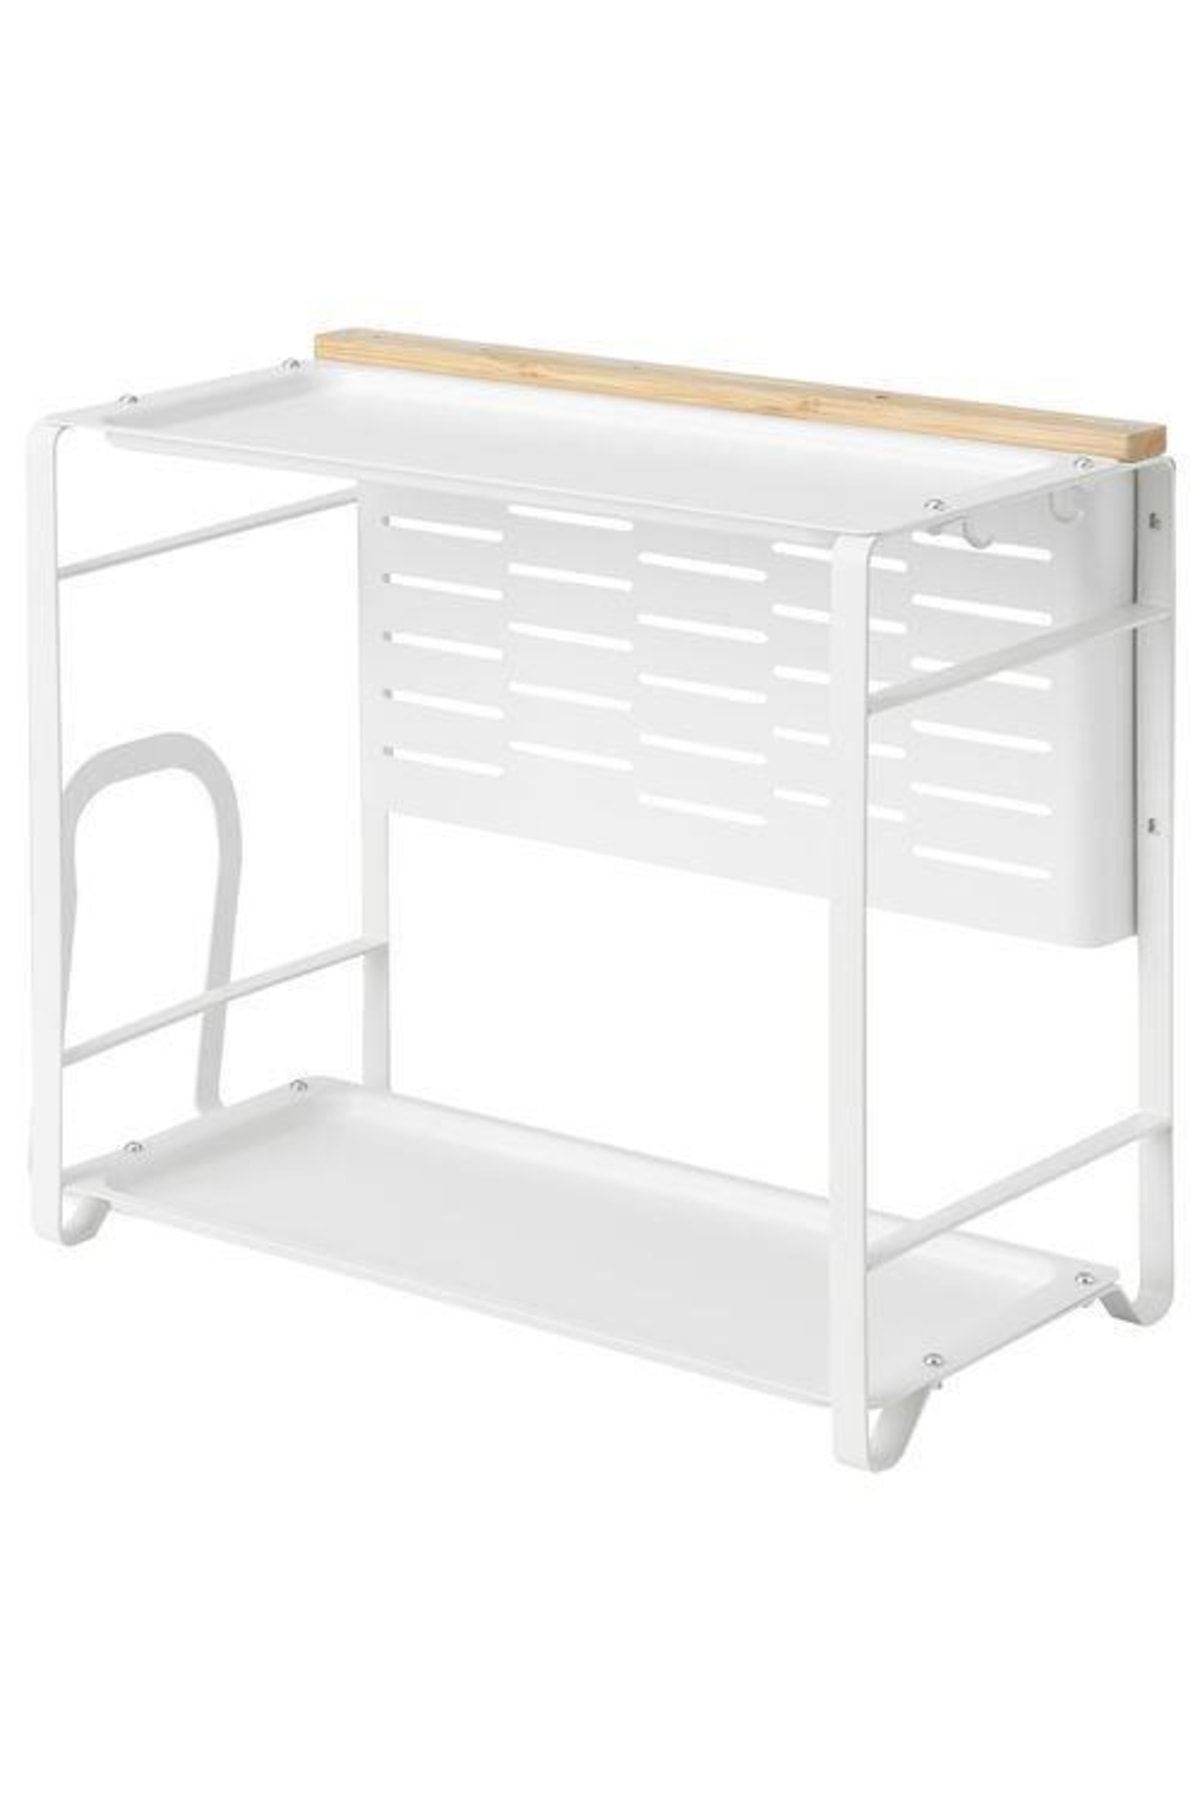 IKEA Beyaz Bambu Tezgah Üstü Düzenleyici,meridyendukkan Beyaz, 40x21 Cm Mutfak Organizatörü Metal